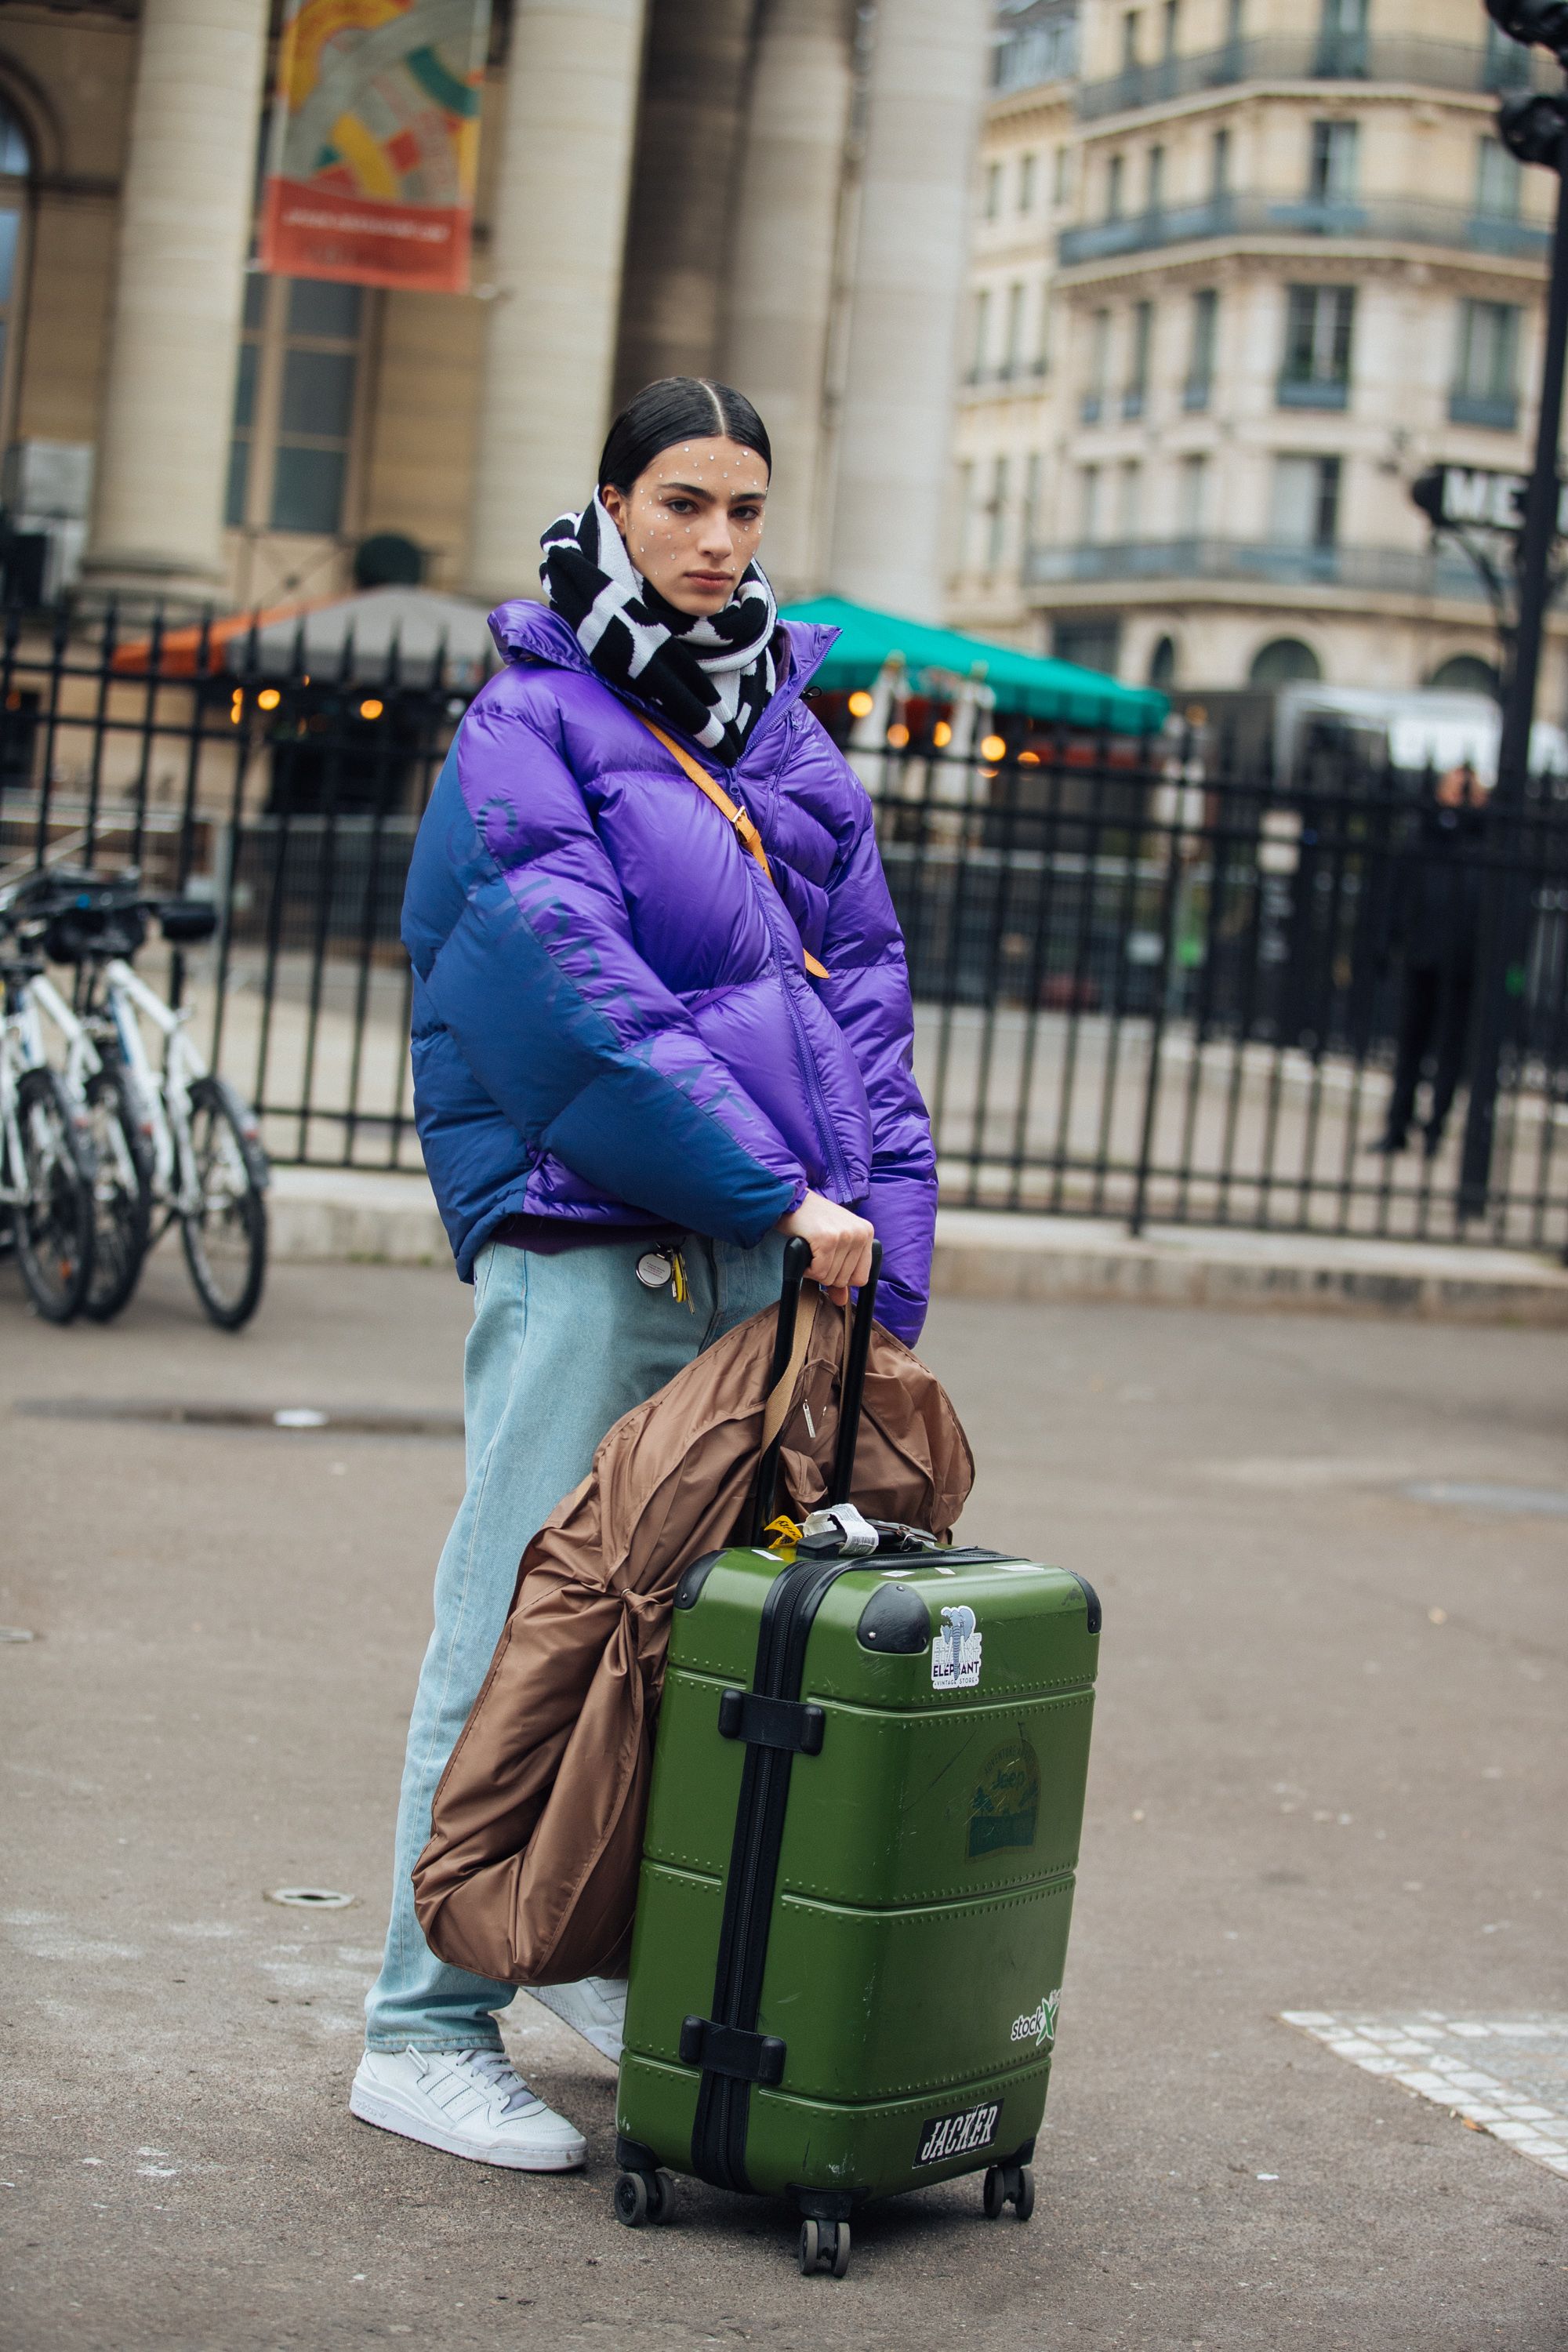 Best Travel Luggage Straps Suitcase Belt Baggage Bag Packing Secure Cross  Belt | eBay